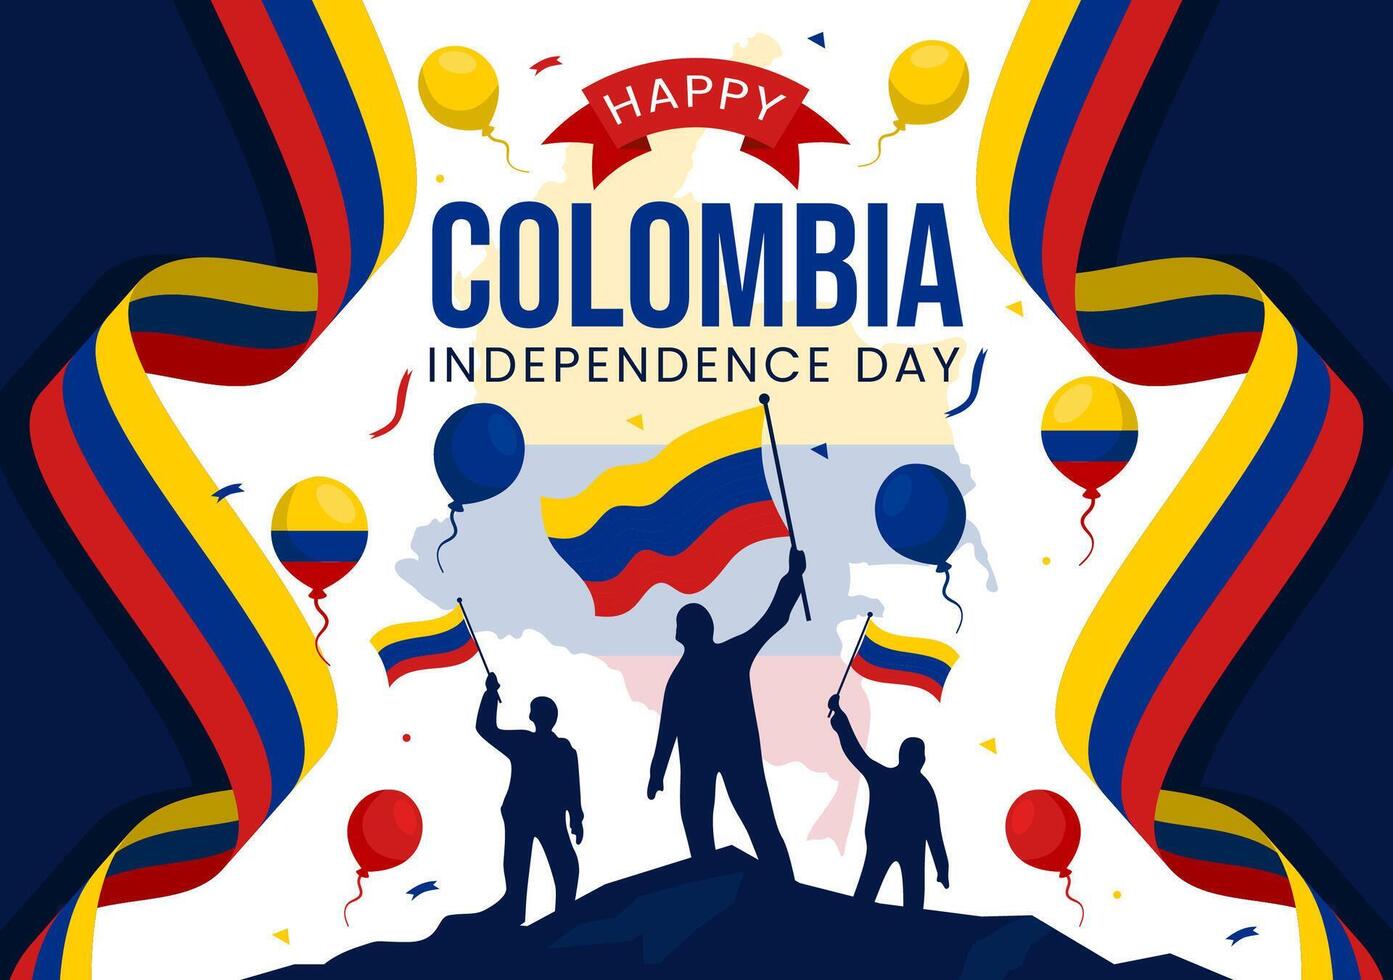 glücklich Kolumbien Unabhängigkeit Tag Illustration auf 20 Juli mit winken Flagge und Band im National Urlaub Feier eben Karikatur Hintergrund vektor